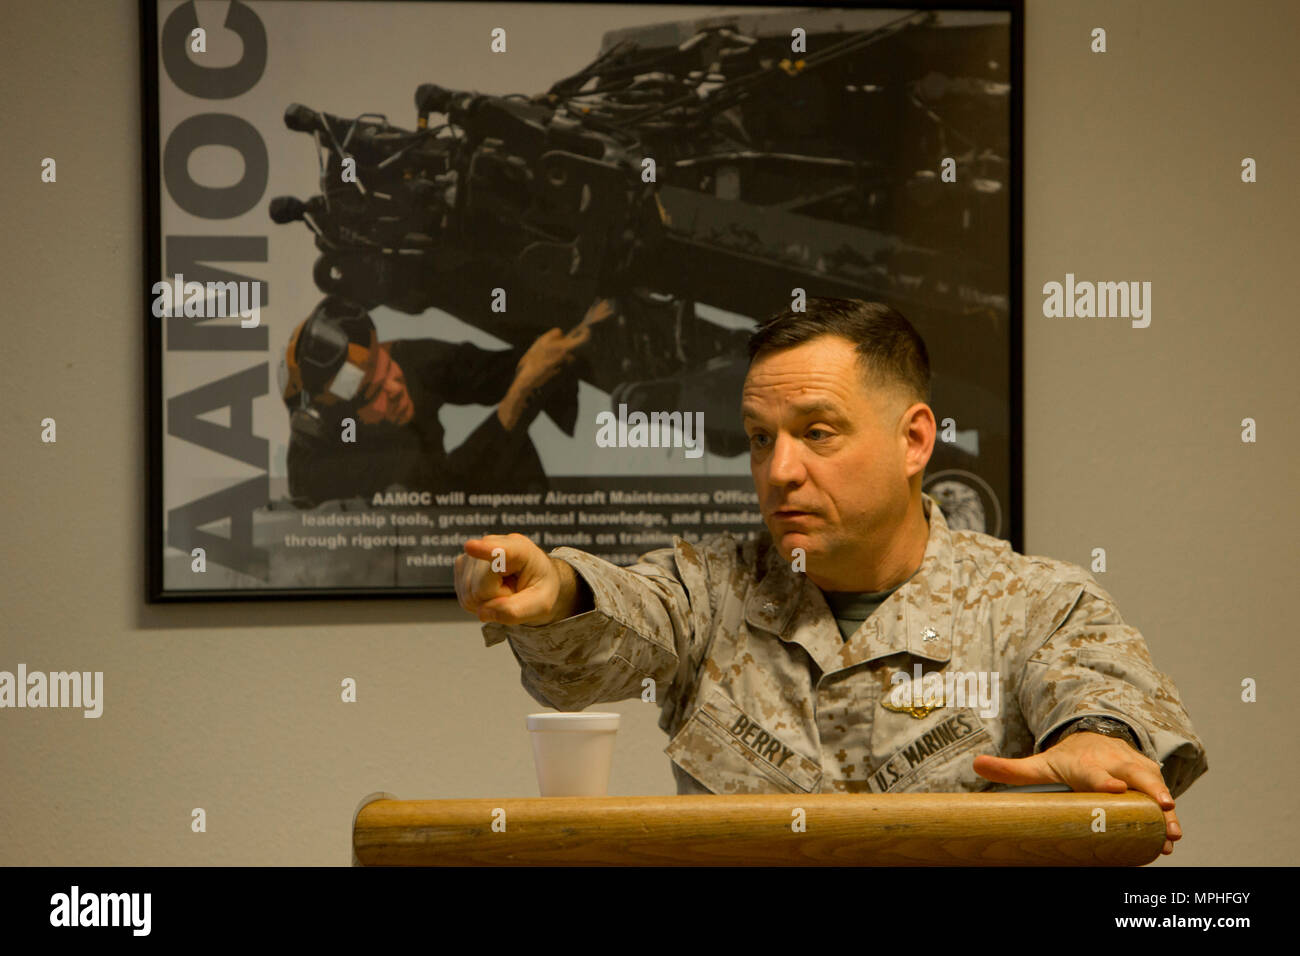 Le Lieutenant-colonel du Corps des Marines des États-Unis. Guy G. Berry, la stratégie et les plans avec le siège maritime (HQMC) donne une période d'instruction à propos de l'agent d'entretien d'aéronefs (cours) AAMOC au Marine Corps Air Station Yuma (Arizona), le 21 mars 2000, 14, 2017. AAMOC permettra aux agents d'entretien d'aéronefs avec outils de leadership, plus de connaissances techniques, et de pratiques normalisées par des universitaires et les mains sur la formation afin de réduire les accidents liés au sol et augmenter la production sortie. (U.S. Marine Corps photo prise par le Cpl. AaronJames B. lié) Banque D'Images